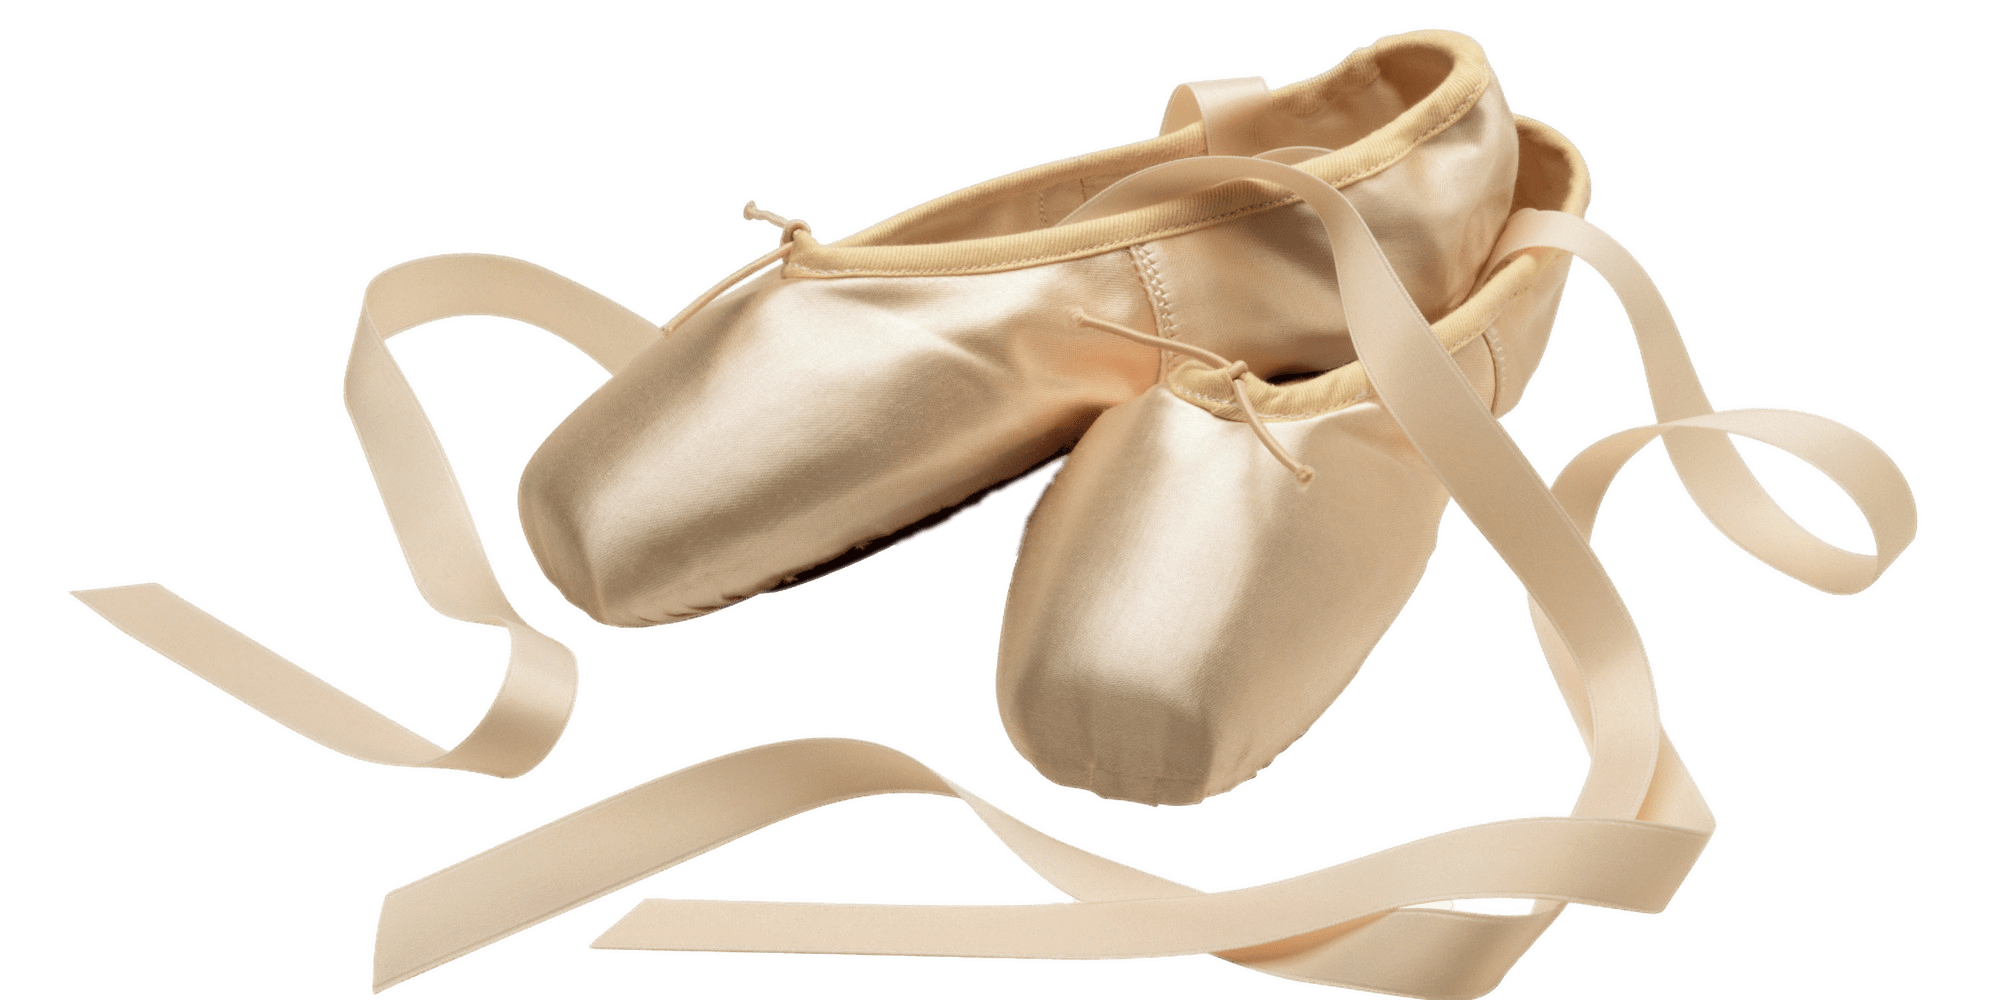 clipart shoes ballet